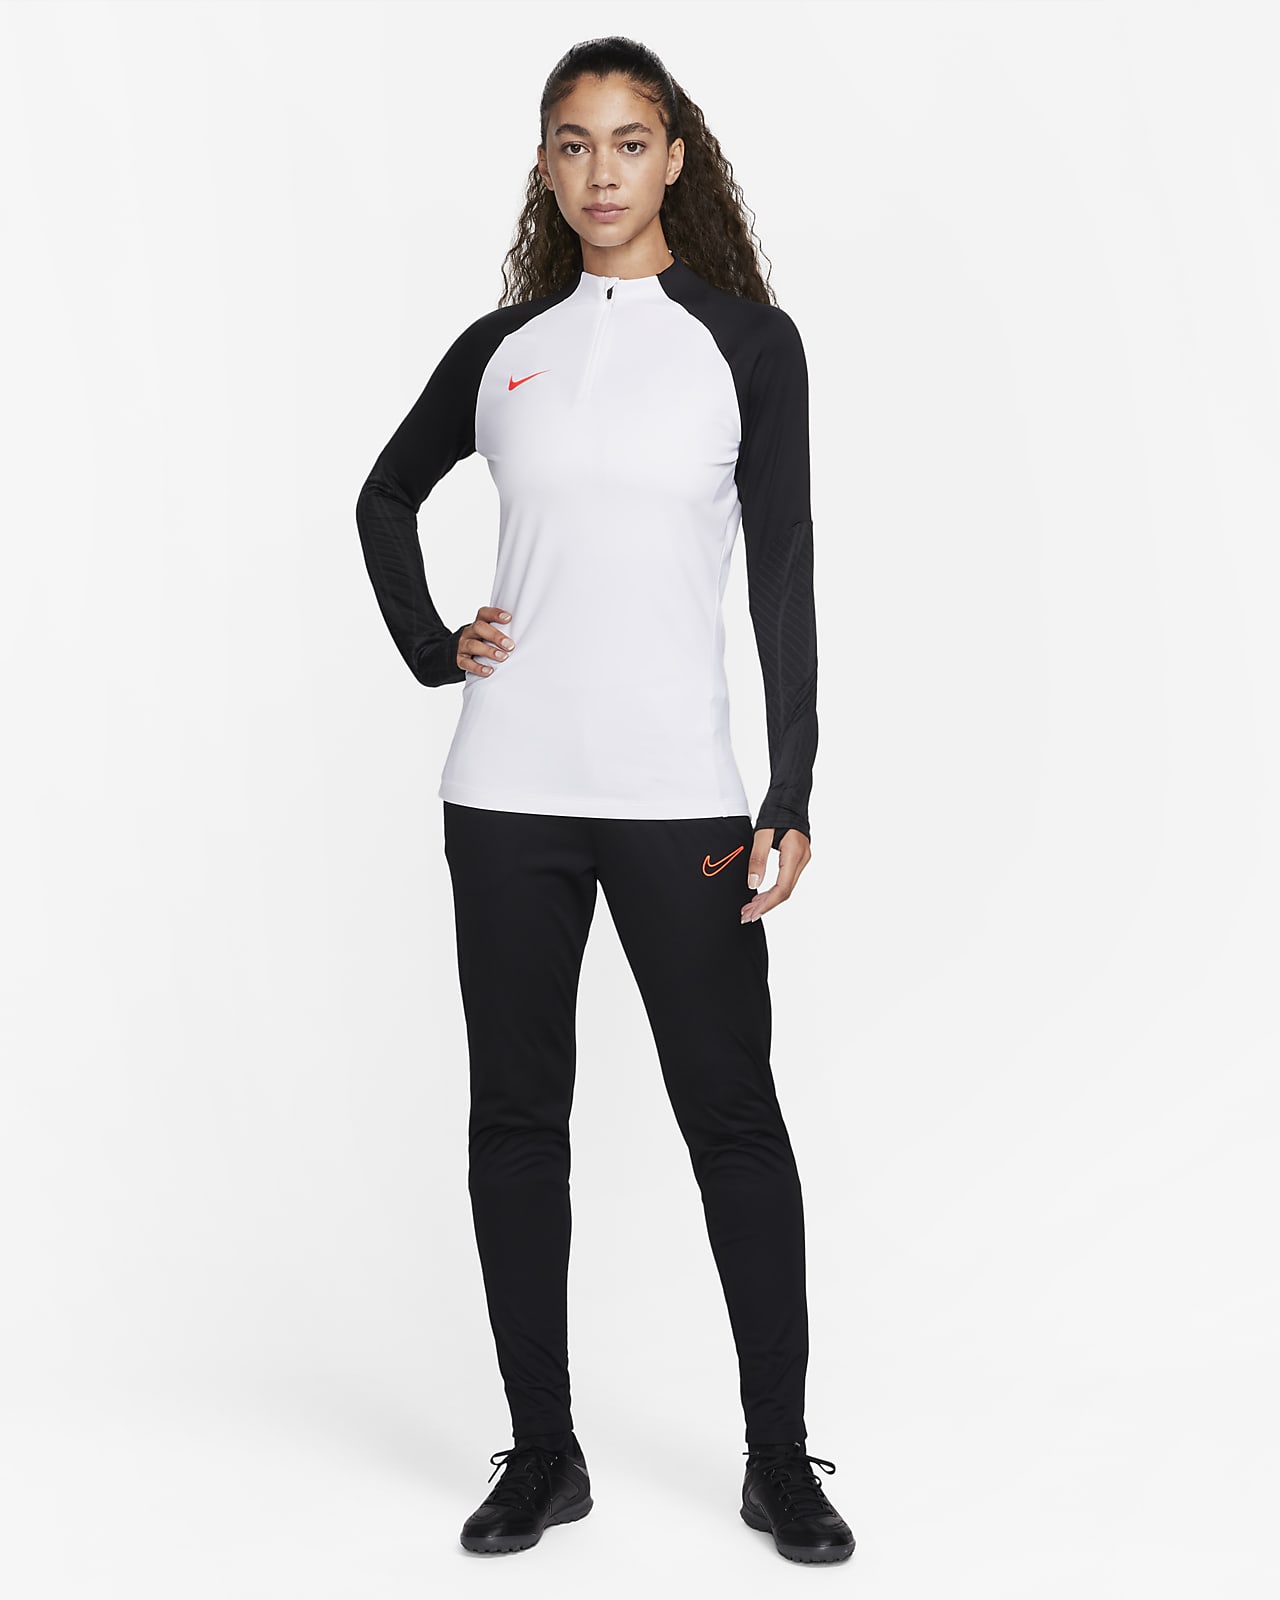 vores labyrint Misbruge Langærmet Nike Dri-FIT Strike-træningsoverdel til kvinder. Nike DK